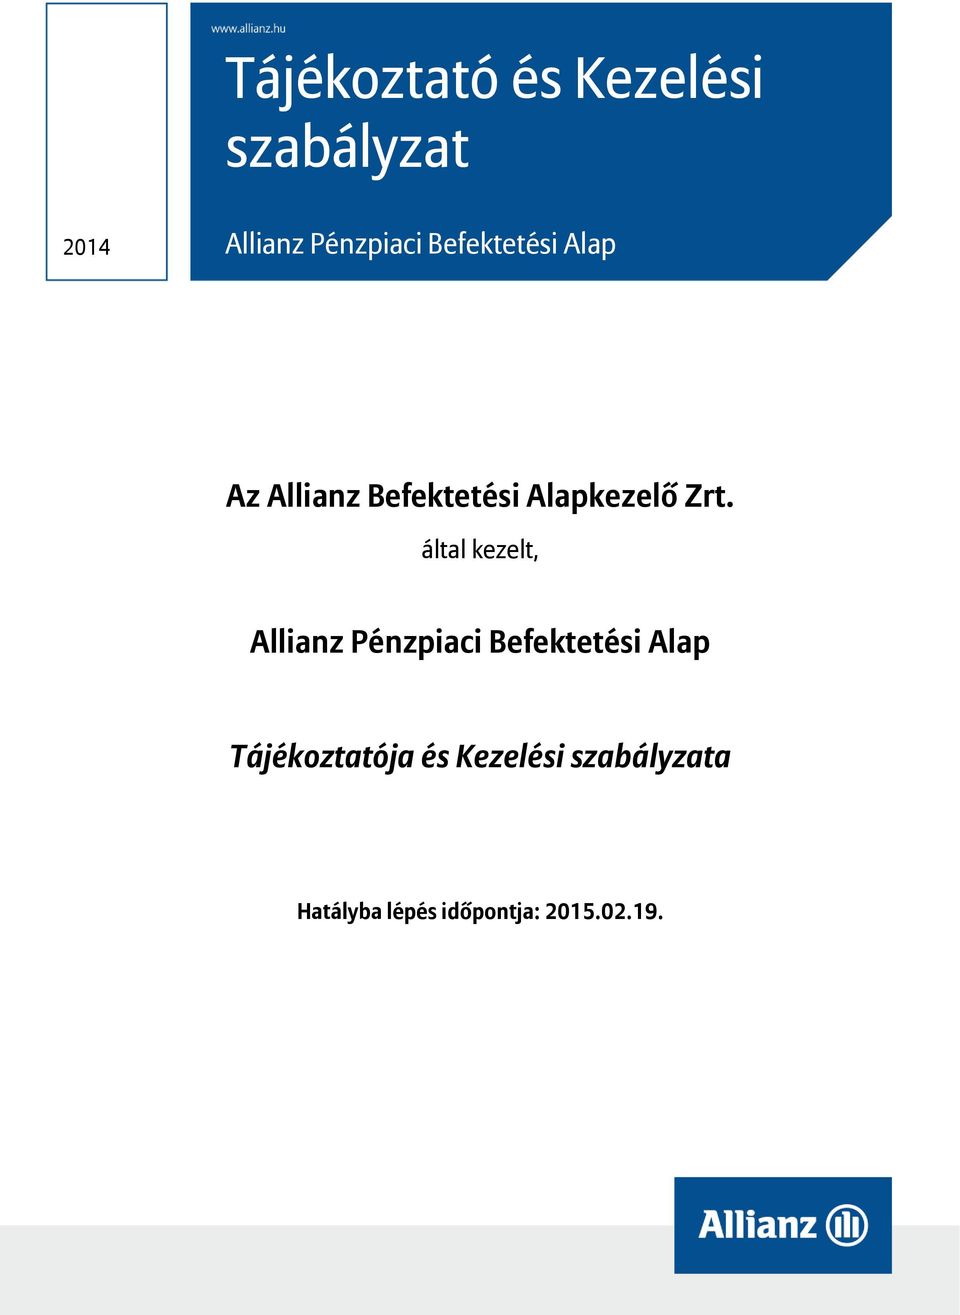 által kezelt, Allianz Pénzpiaci Befektetési Alap